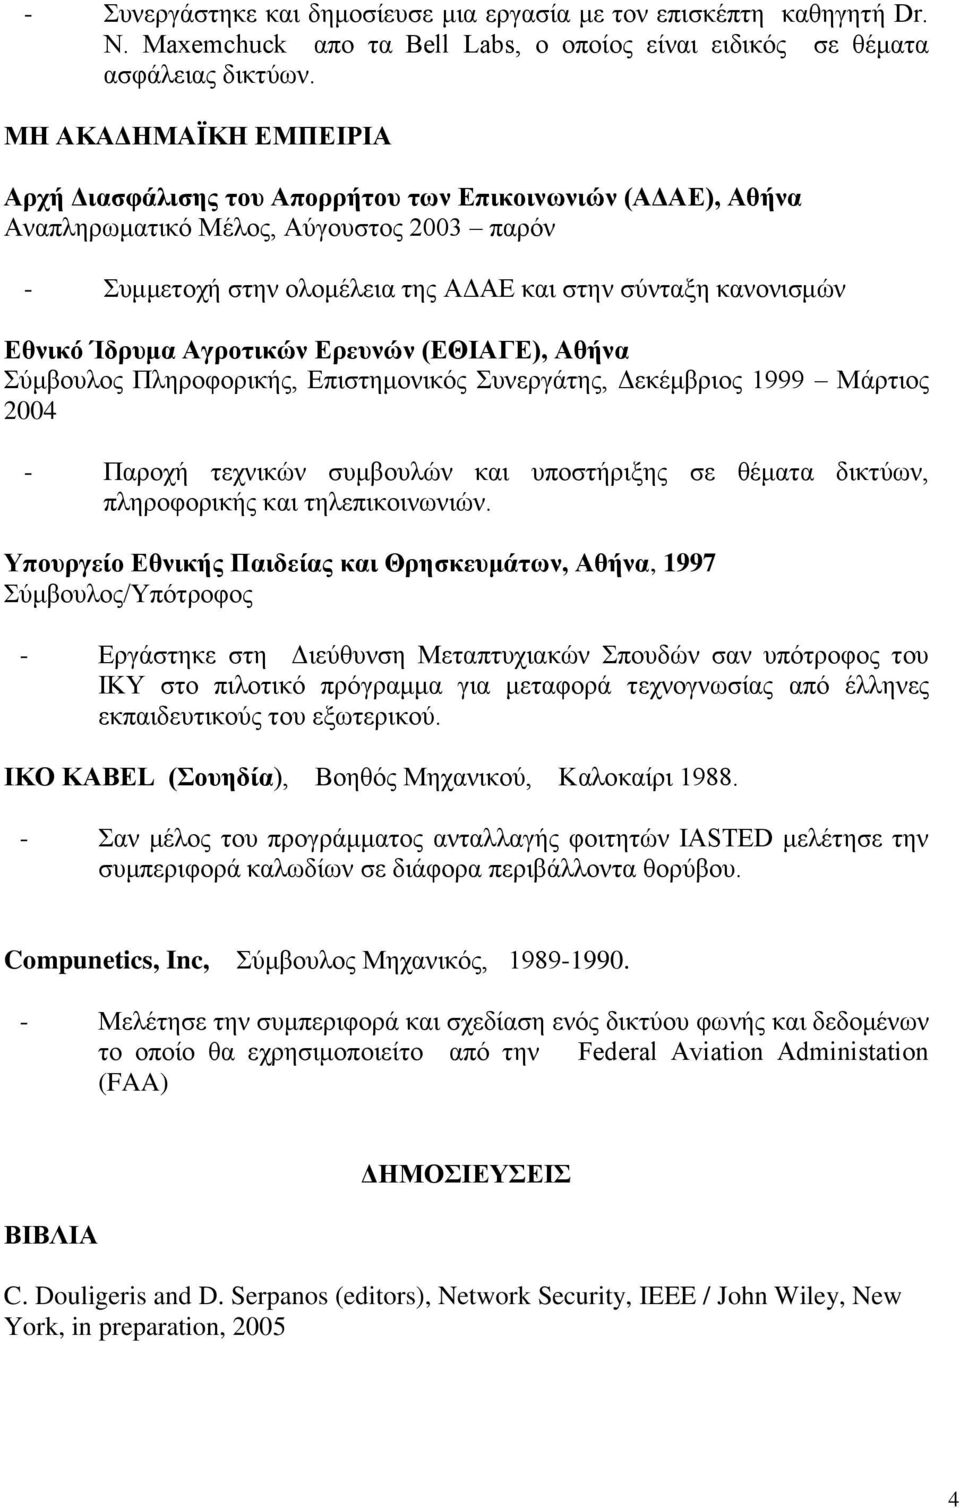 Ίδρυμα Αγροτικών Ερευνών (ΕΘΙΑΓΕ), Αθήνα Σύμβουλος Πληροφορικής, Επιστημονικός Συνεργάτης, Δεκέμβριος 1999 Μάρτιος 2004 - Παροχή τεχνικών συμβουλών και υποστήριξης σε θέματα δικτύων, πληροφορικής και